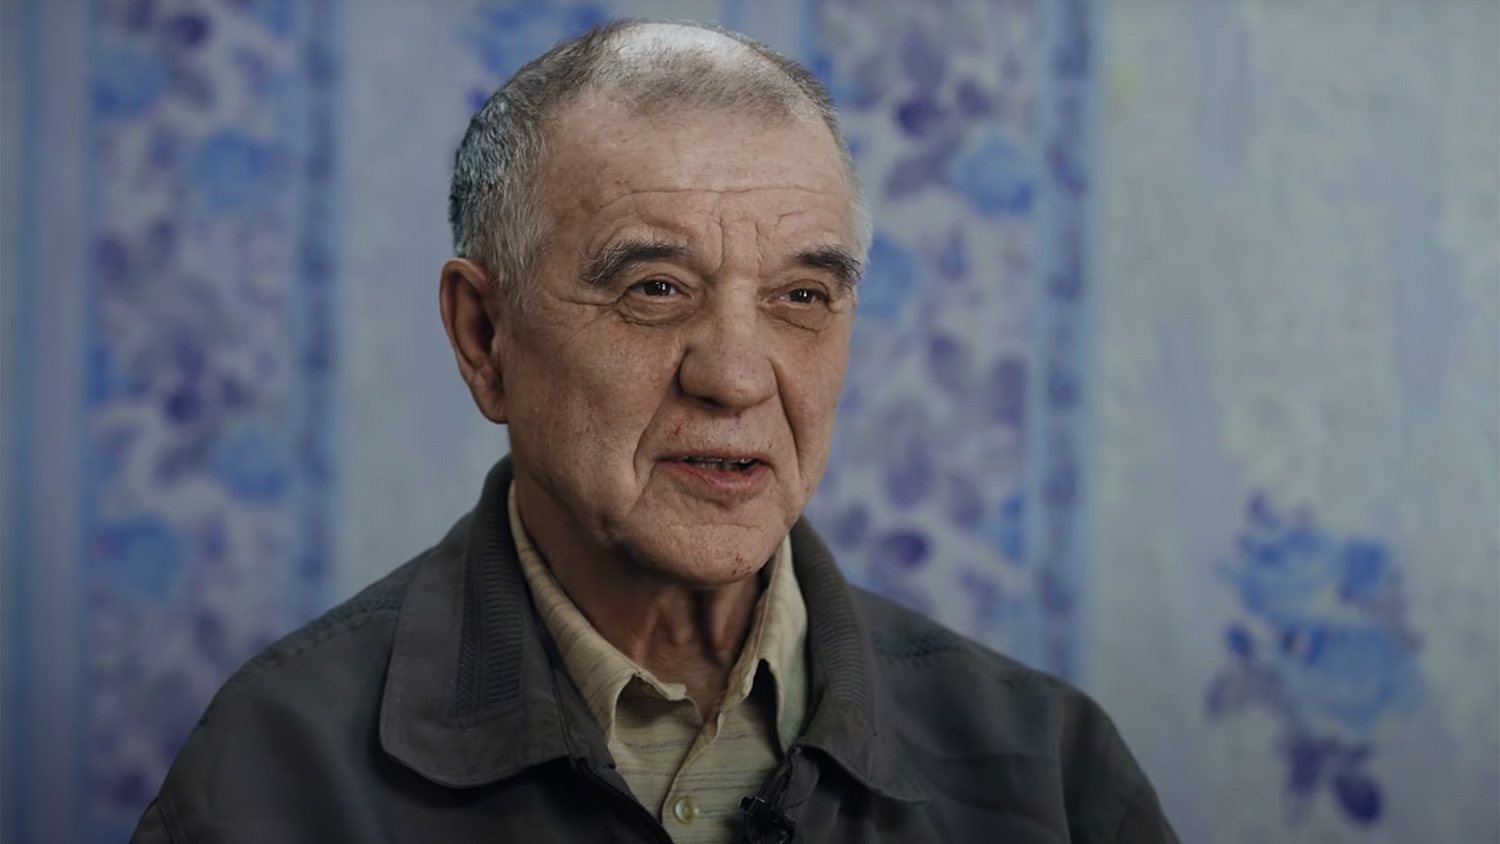 Фильм Ксении Собчак о скопинском маньяке. Допустимо ли брать интервью у убийцы?